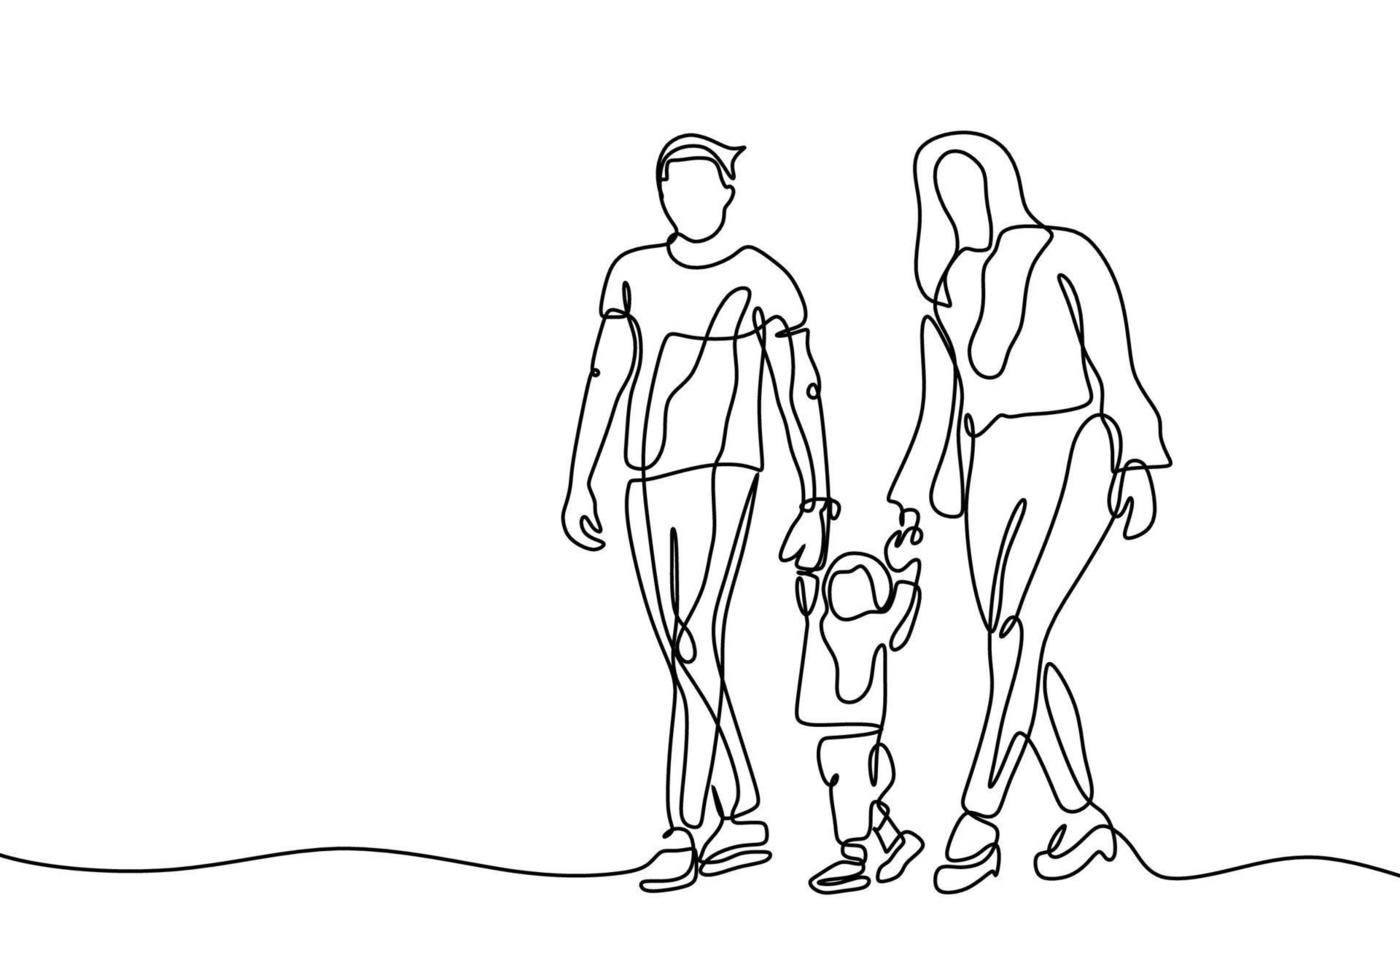 desenho de uma linha contínua de vetor familiar, conceito de pai, mãe e filho.